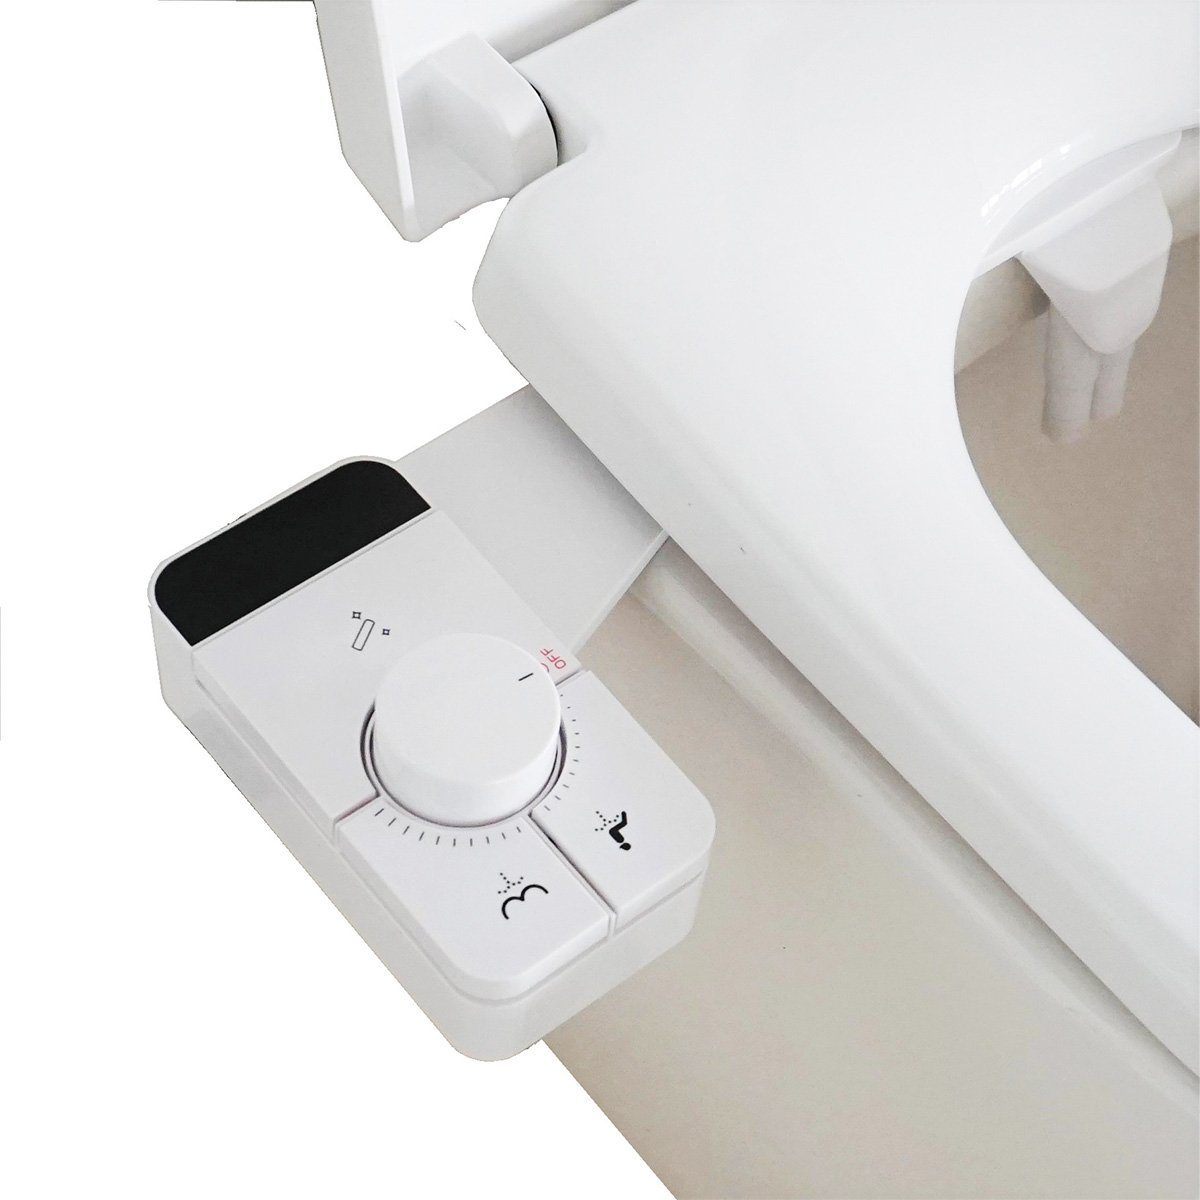 DOPWii Bidet-Einsatz Bidet-Aufsatz,2Modi,selbstreinigende 2Düsen,Lochabstand: 84-196 mm, Geeignet für Toiletten